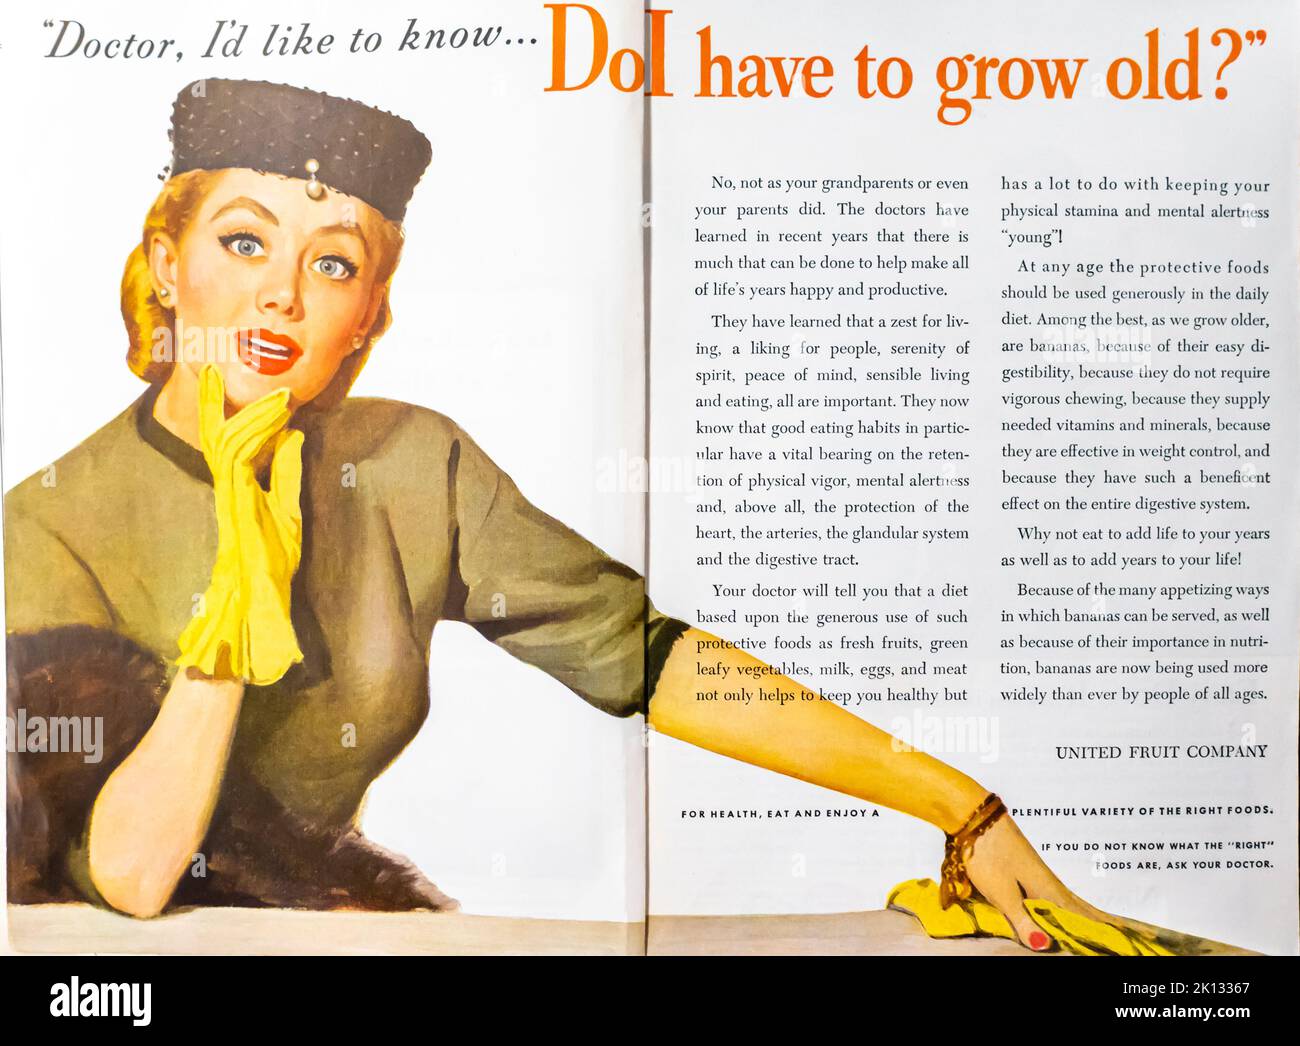 United Fruit Company advertisement placed inside a NatGeo magazine, 1954 Stock Photo